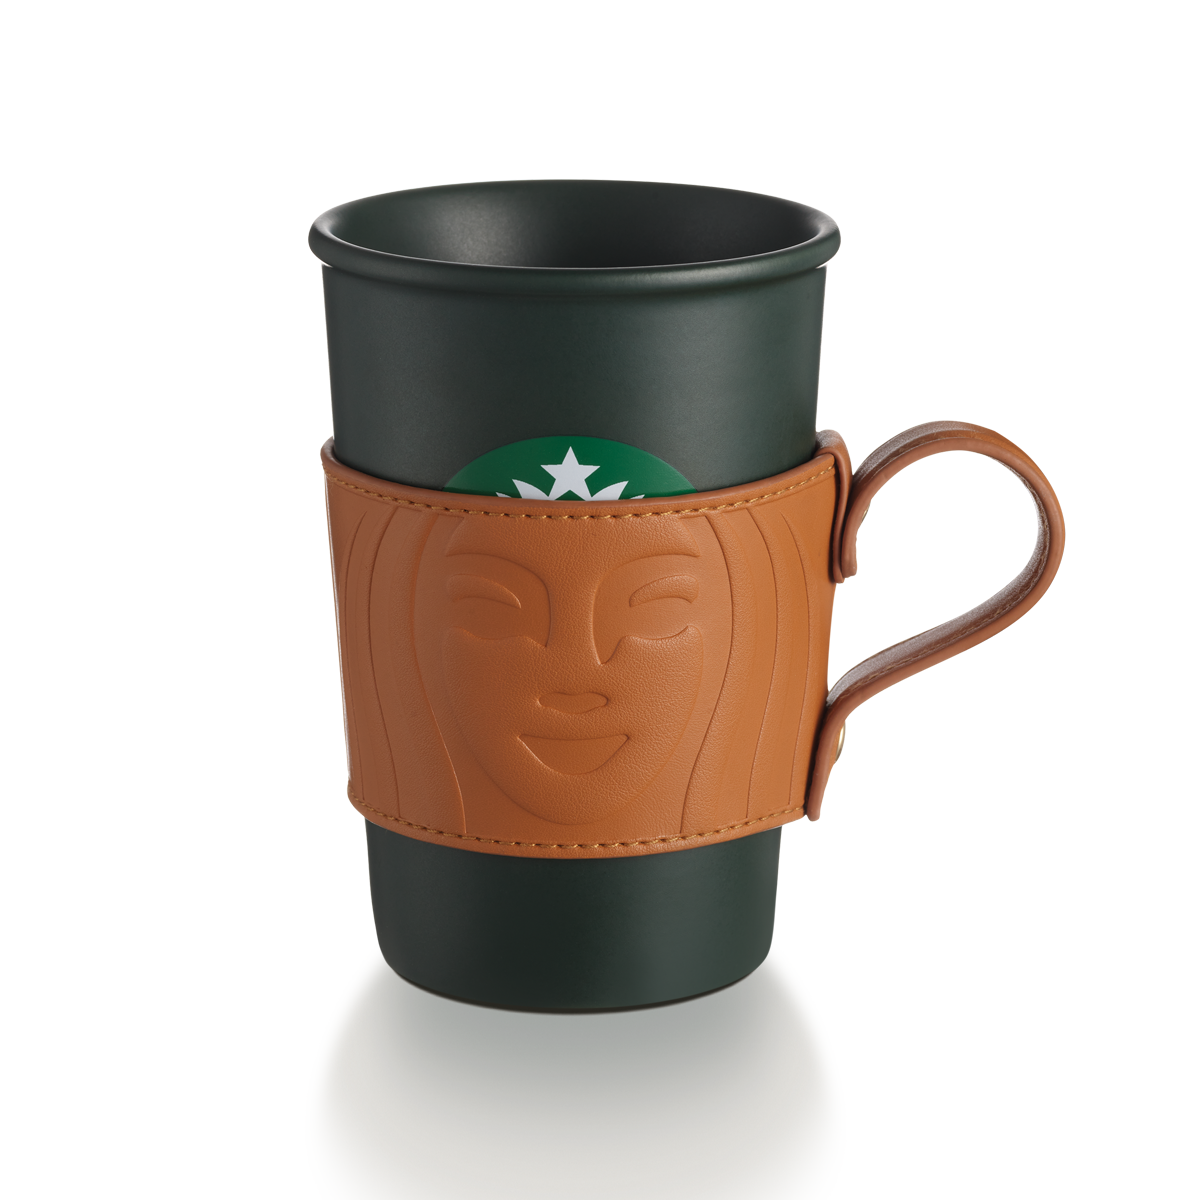 Starbucks Green Ceramic Mug 12oz